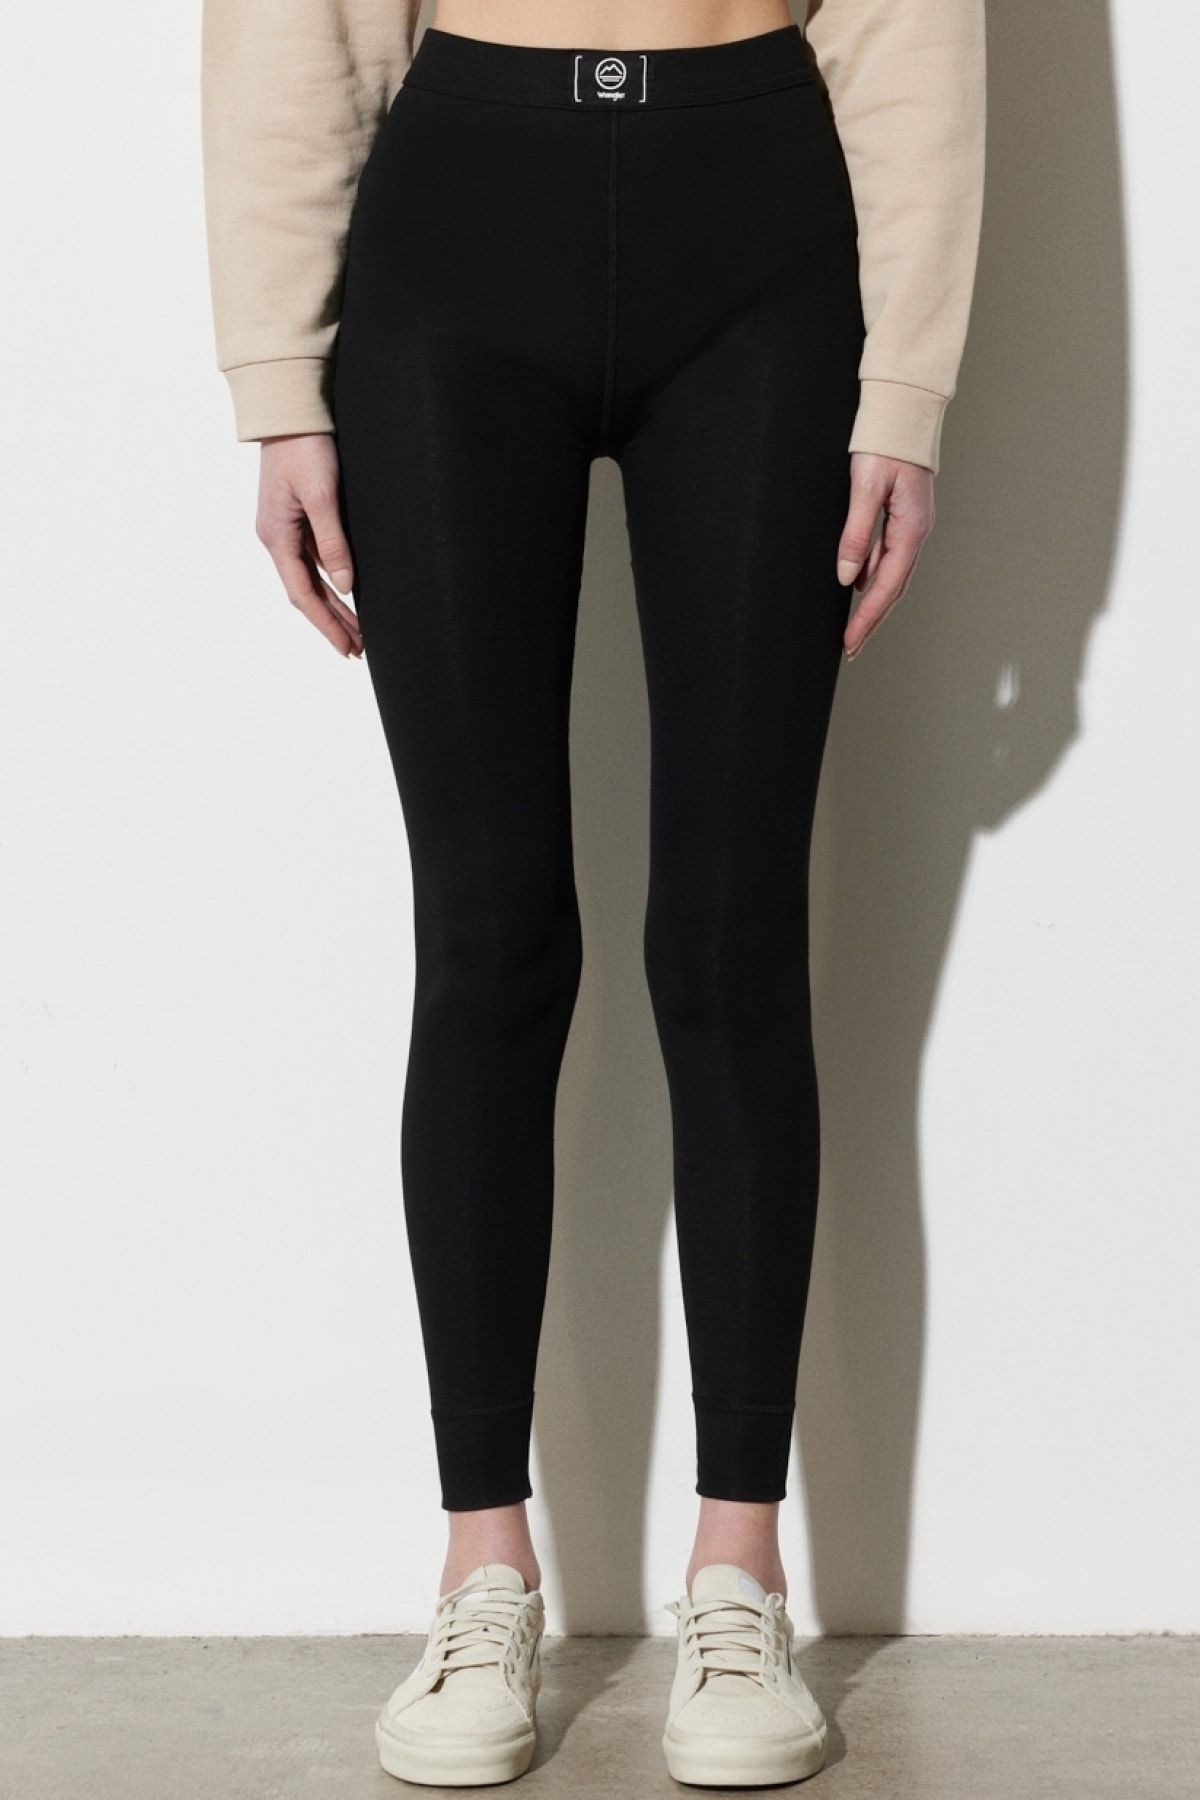 ALL TERRAIN GEAR -x- Wrangler Regular Fit Normal Kesim Kadın Termal Içlik Pantolon W222638